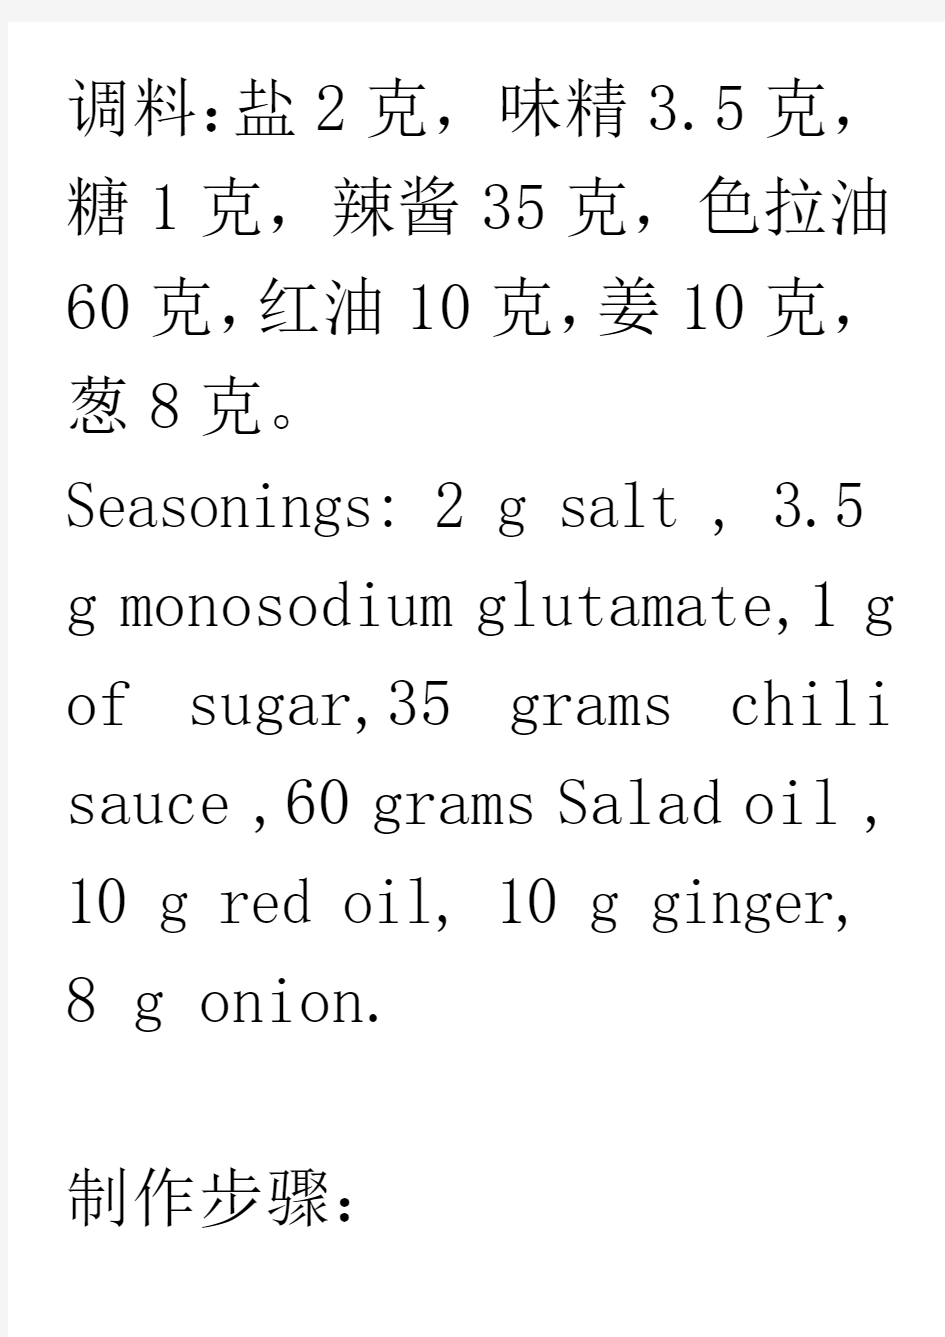 剁椒鱼头菜谱食谱中英文对照中餐西餐